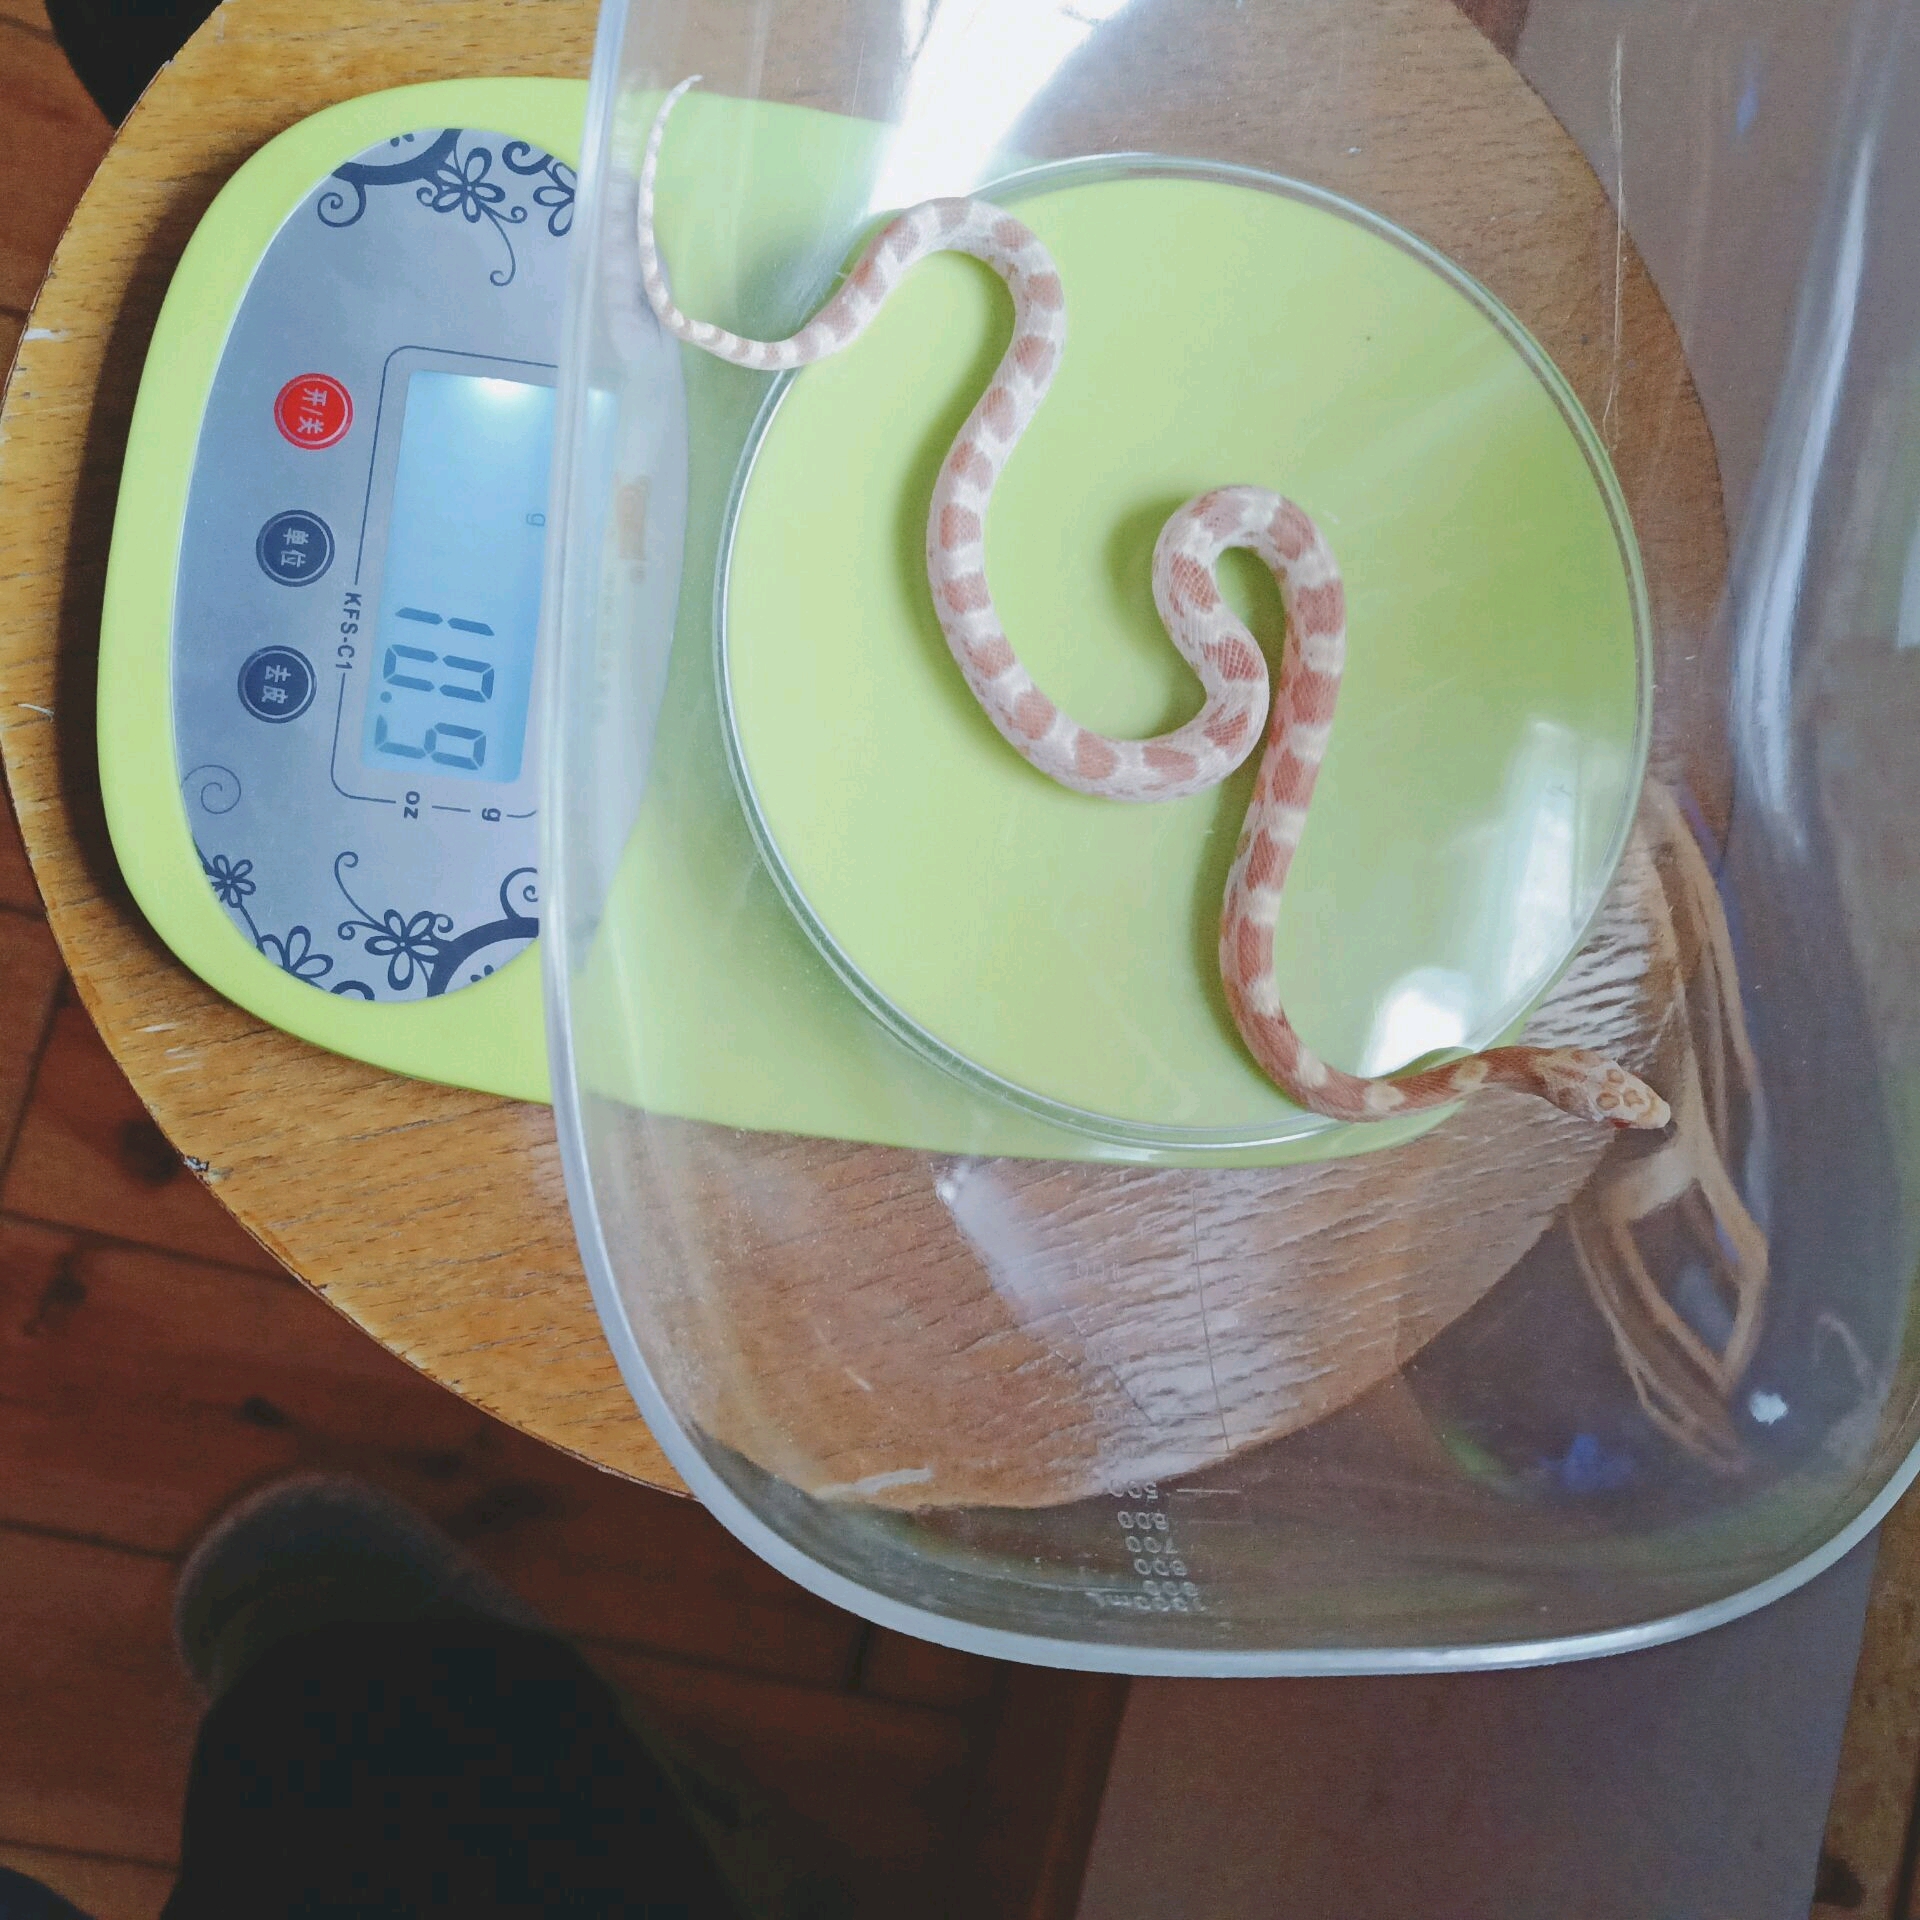 玉米蛇体重年龄表图片